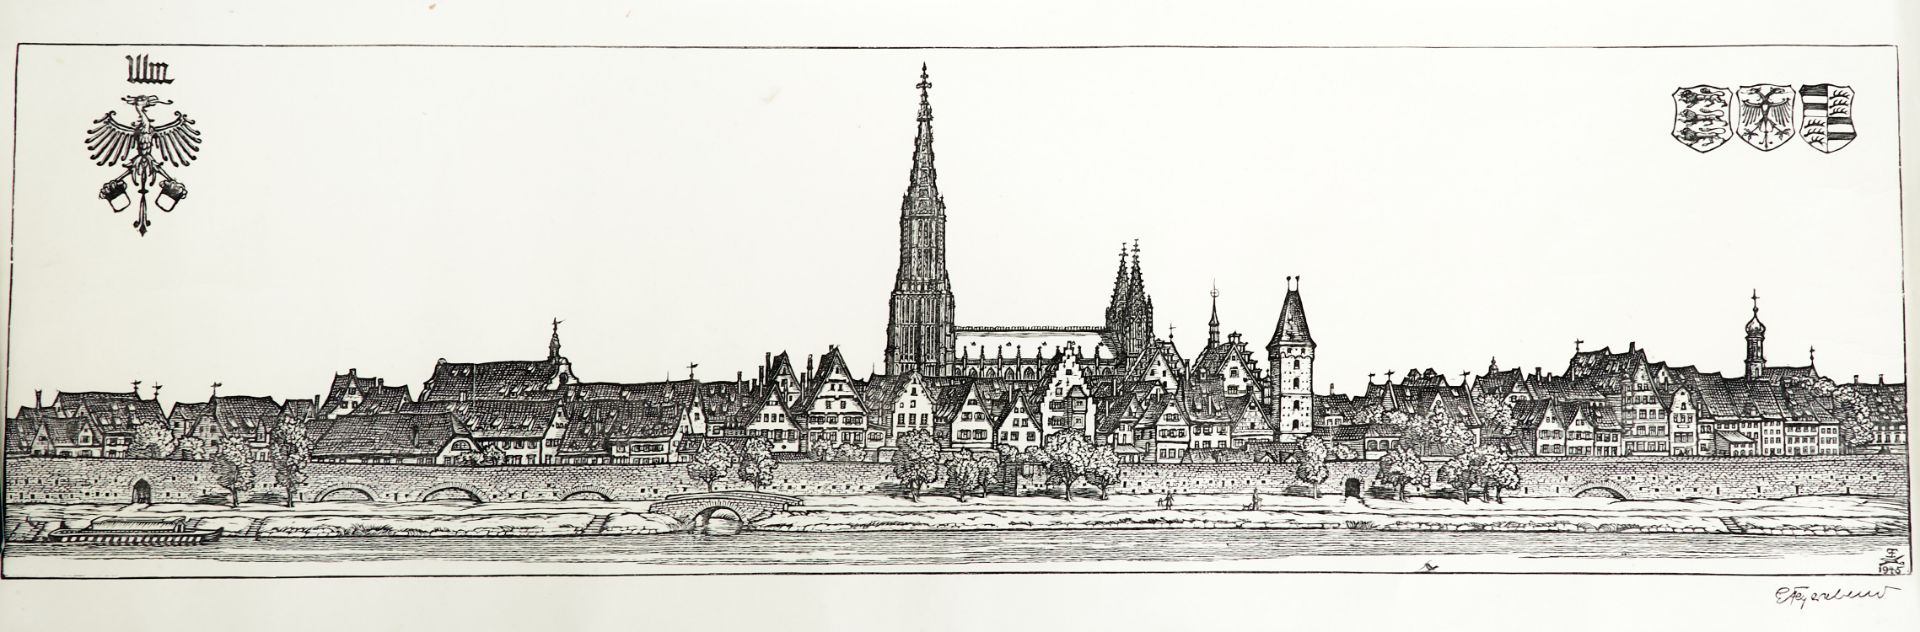 Stuttgart - "Stuttgart". Holzschnitt auf Pergaminpapier von E. Feyerabend, dat. 1945. 27,5 x 147 cm.